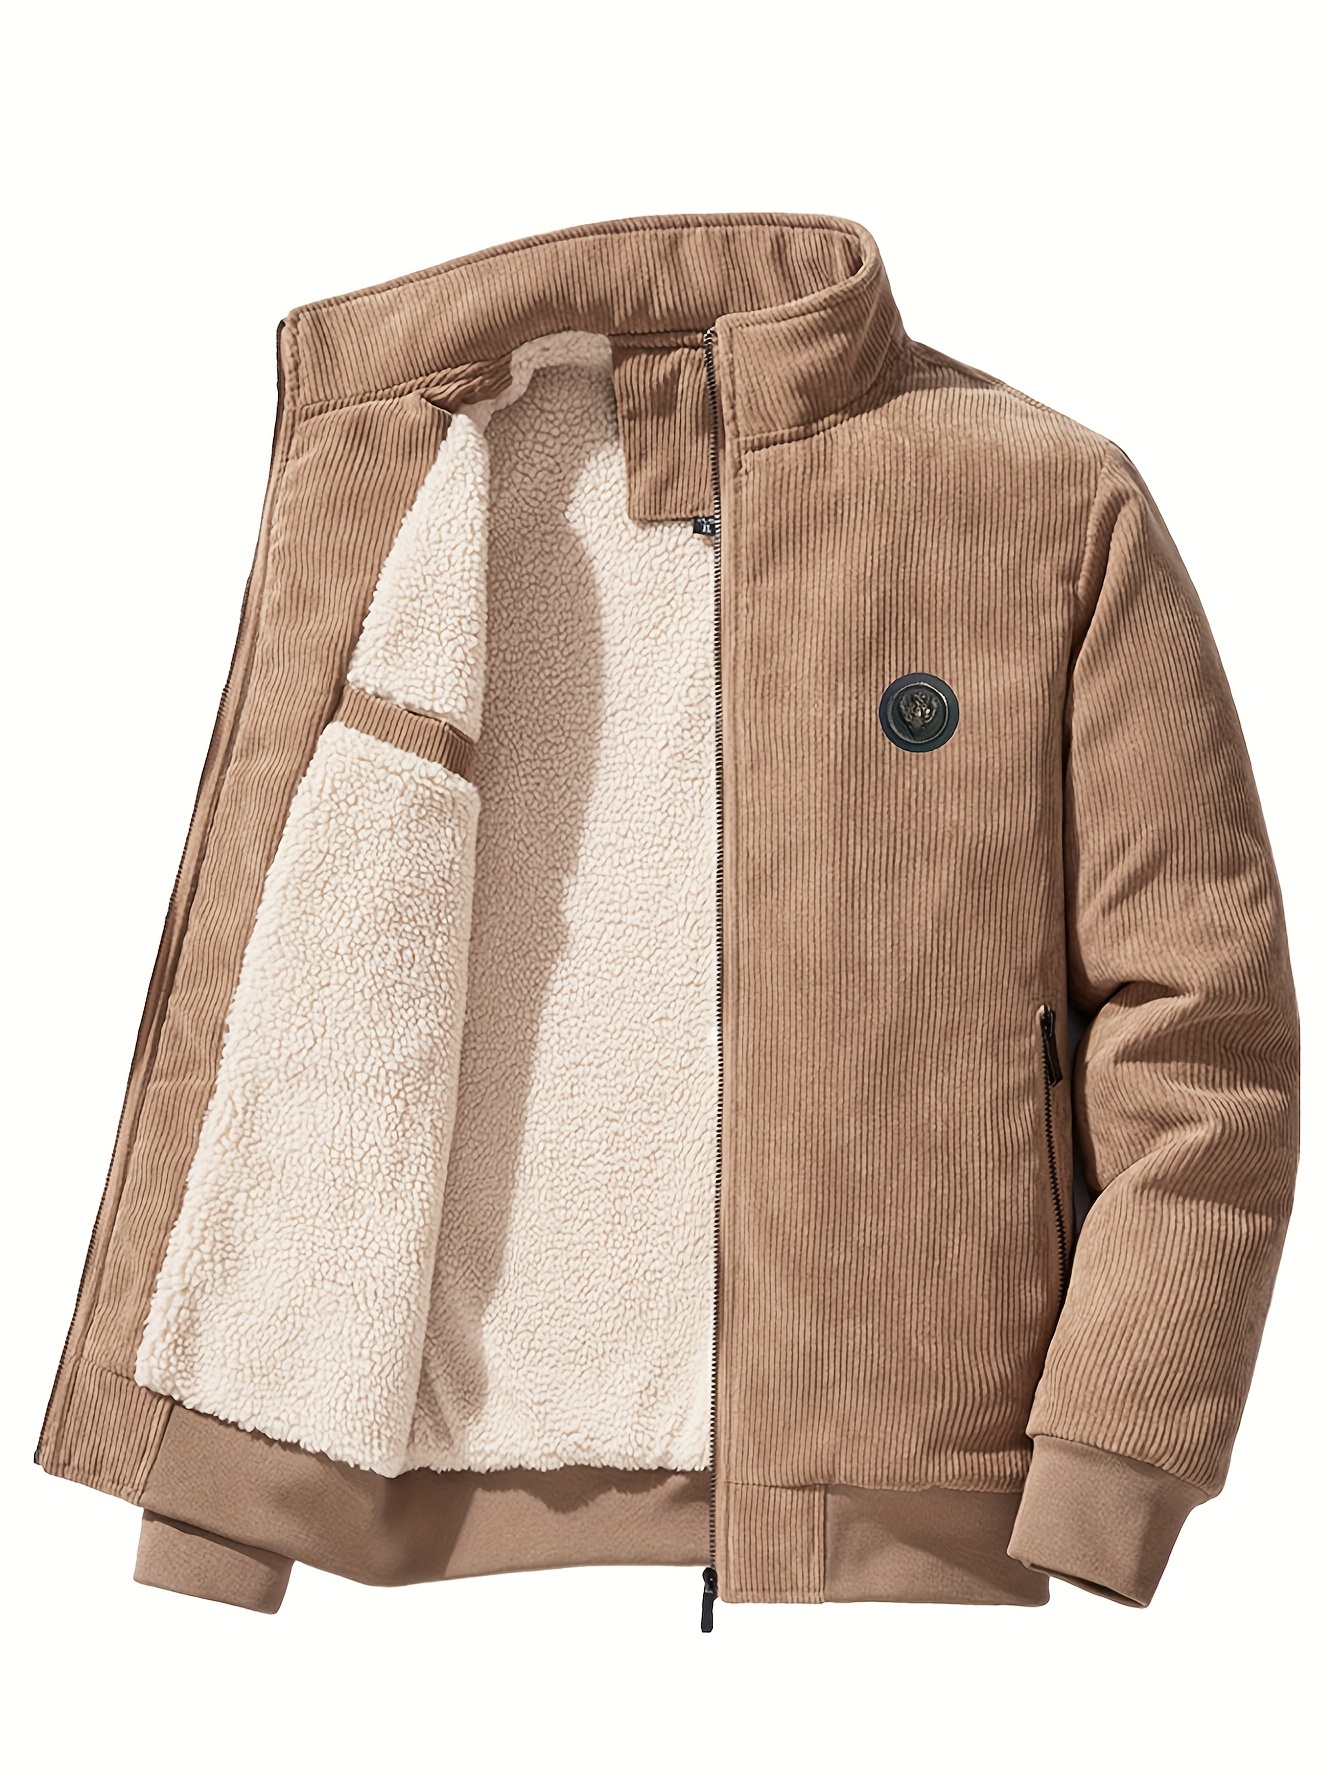 Men's Corduroy Jacket Full Zip Stand Collar Corduroy Coat Winter